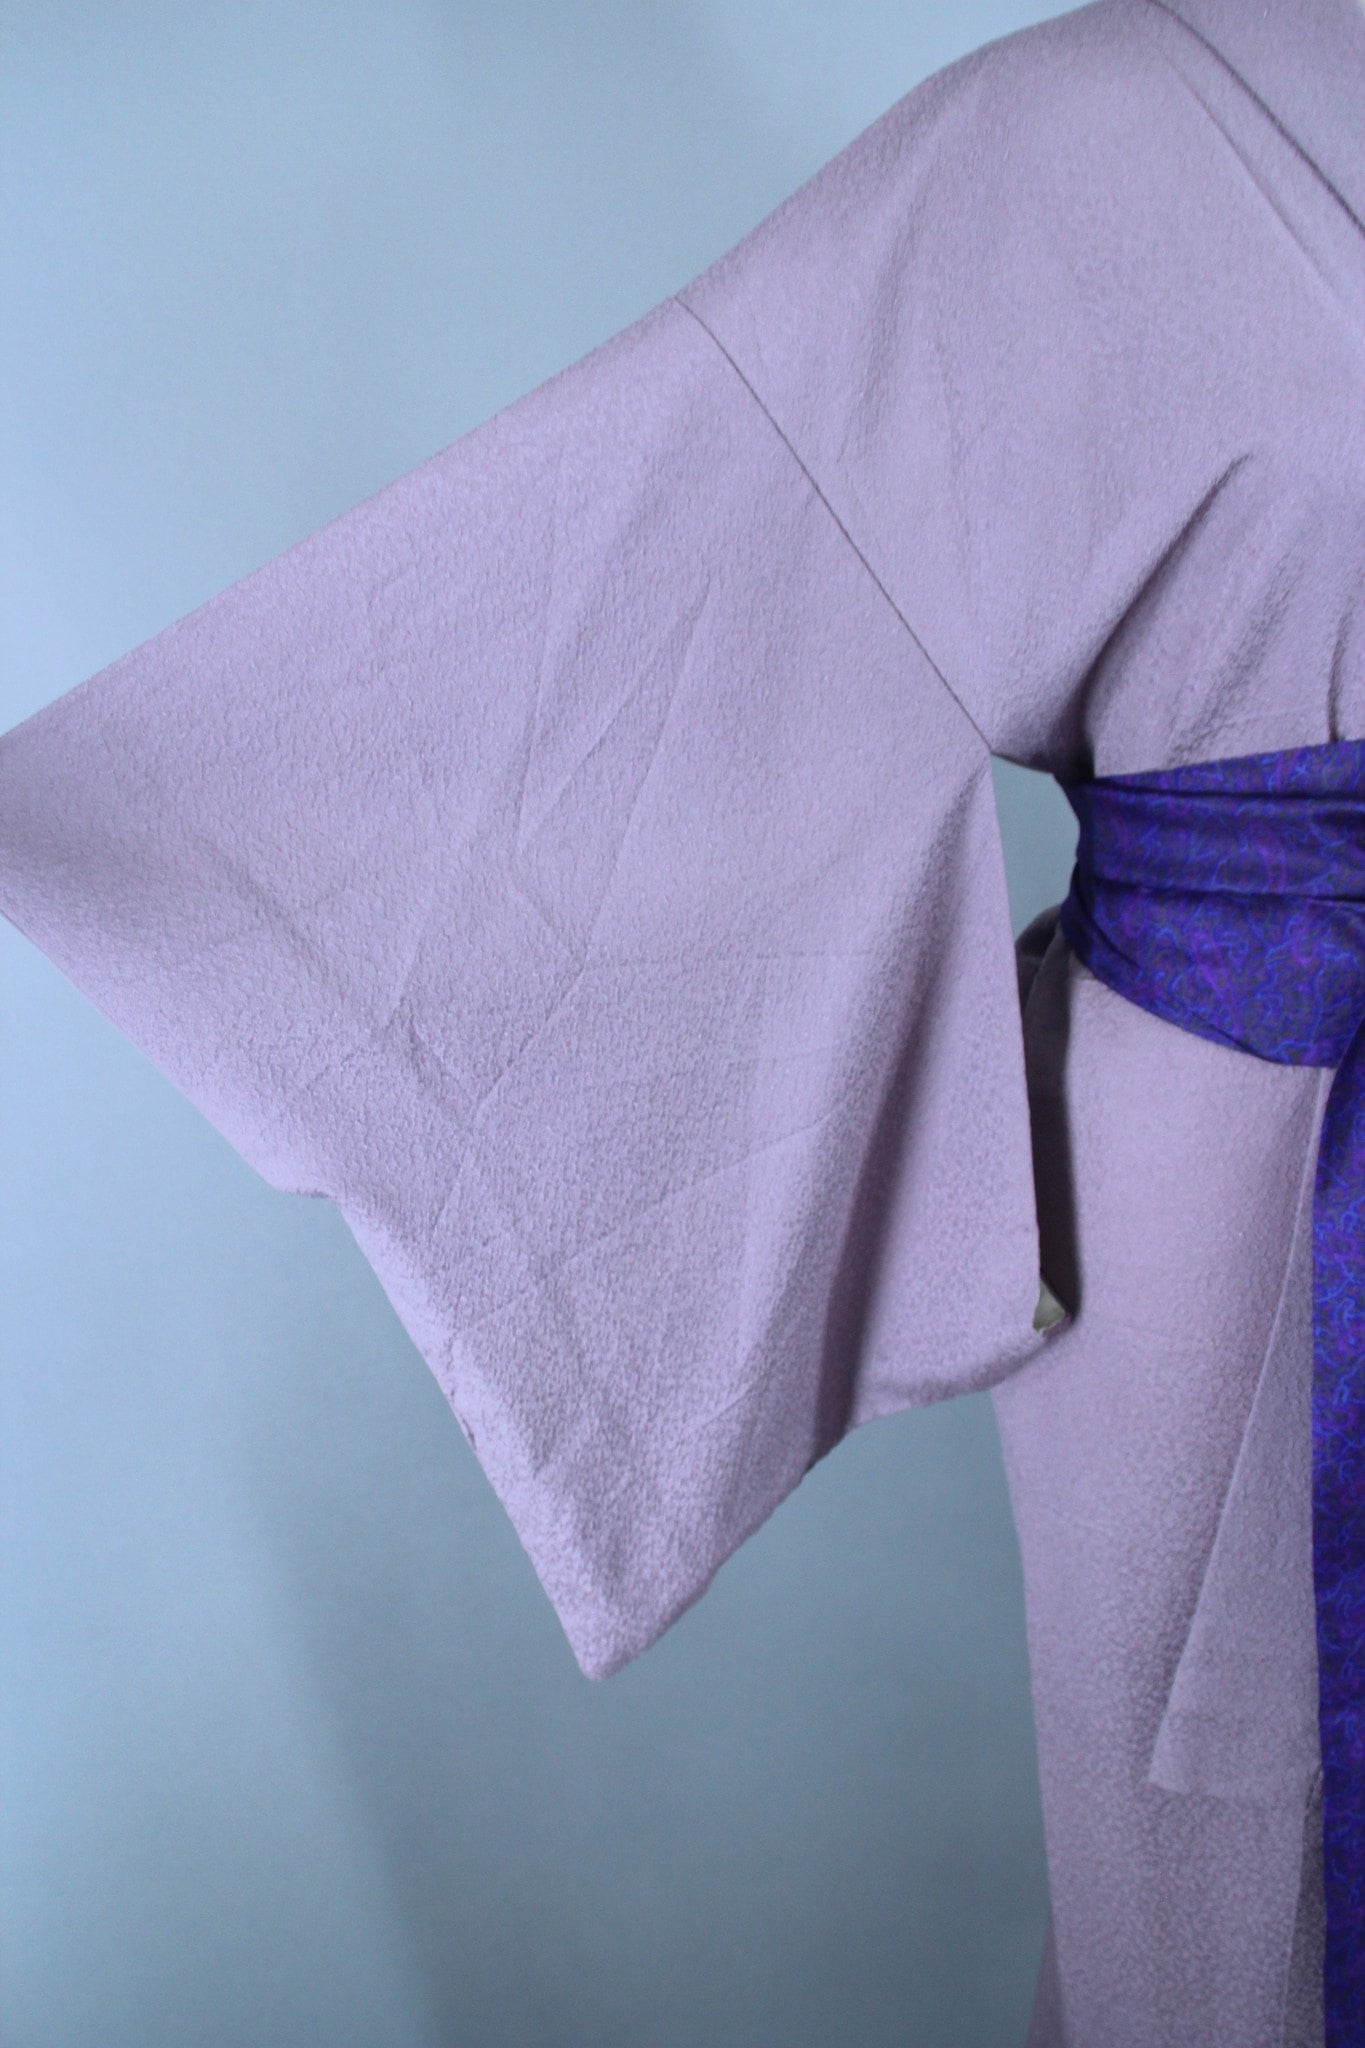 1950s Vintage Silk Kimono Robe / Lavender - ThisBlueBird